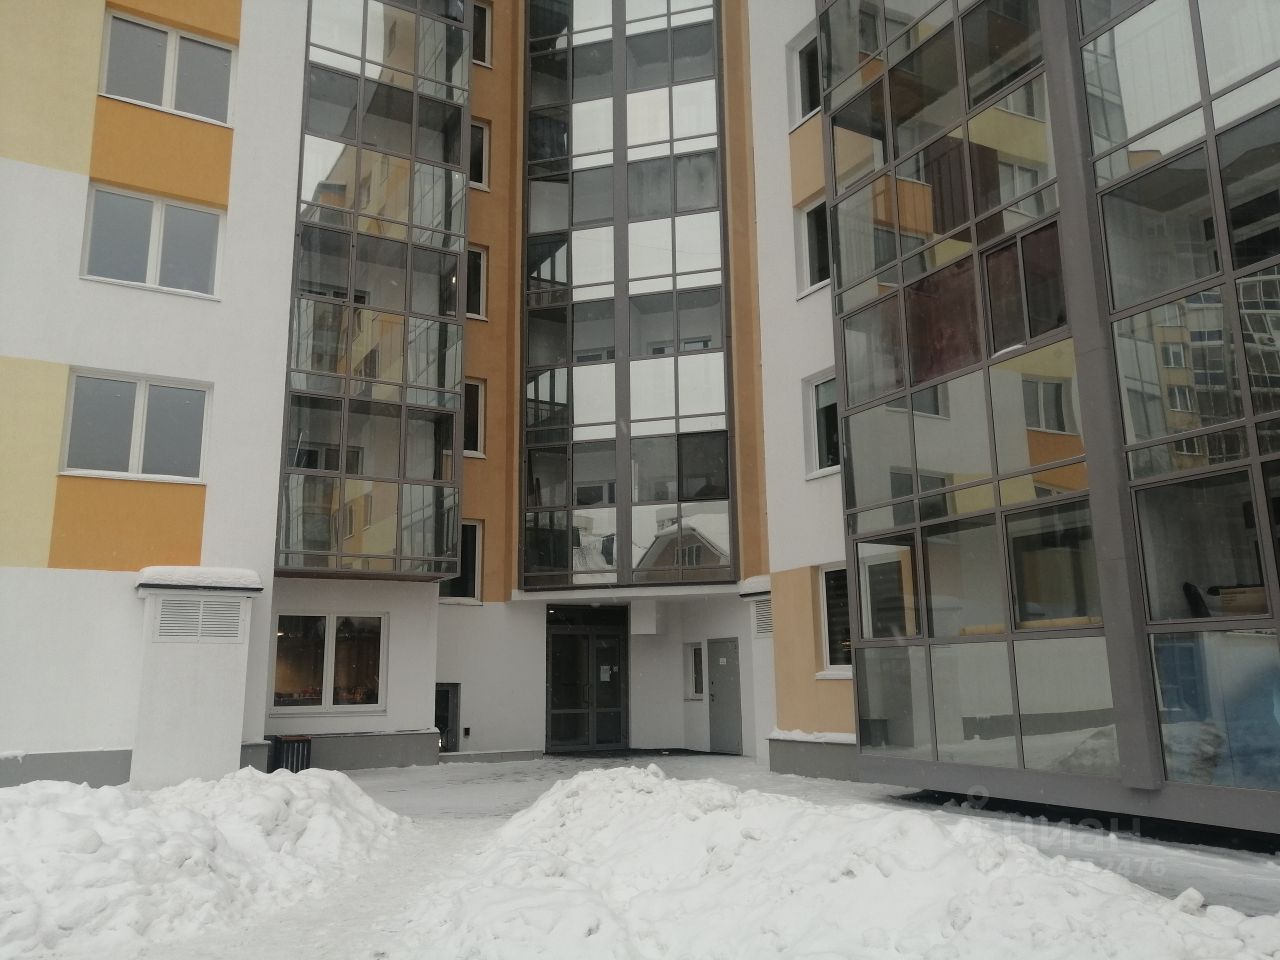 Современный жилой комплекс в Екатеринбурге, квартира на 4 этаже, общая площадь 56.7 кв.м, 2 комнаты, просторная кухня 13 кв.м, без отделки.